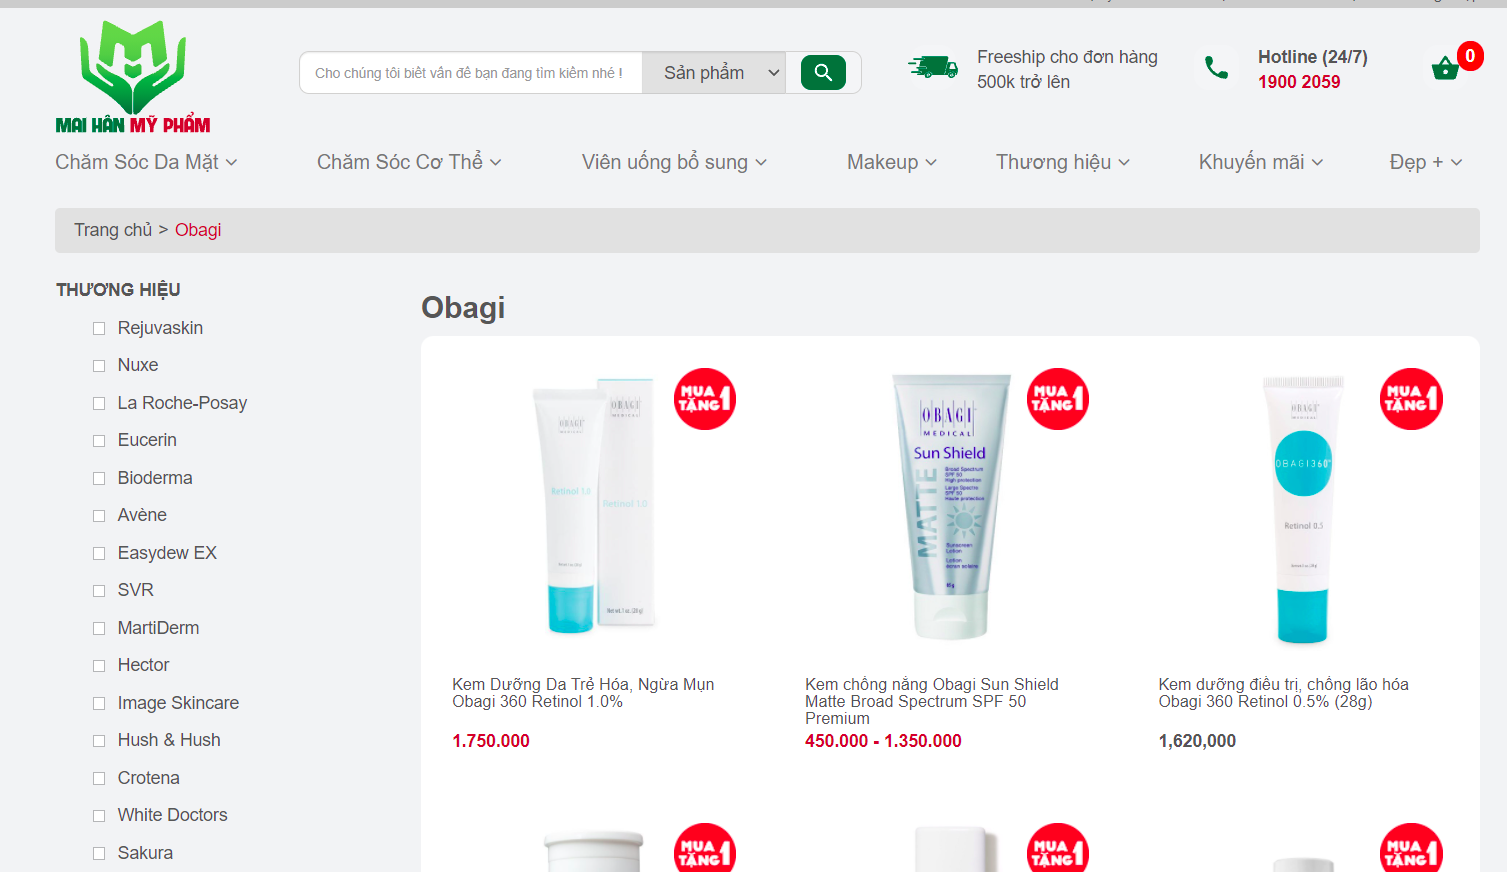 Mỹ phẩm Mai Hân là một trong những đơn vị phân phối mỹ phẩm Obagi chính hãng hàng đầu hiện nay tại Việt Nam